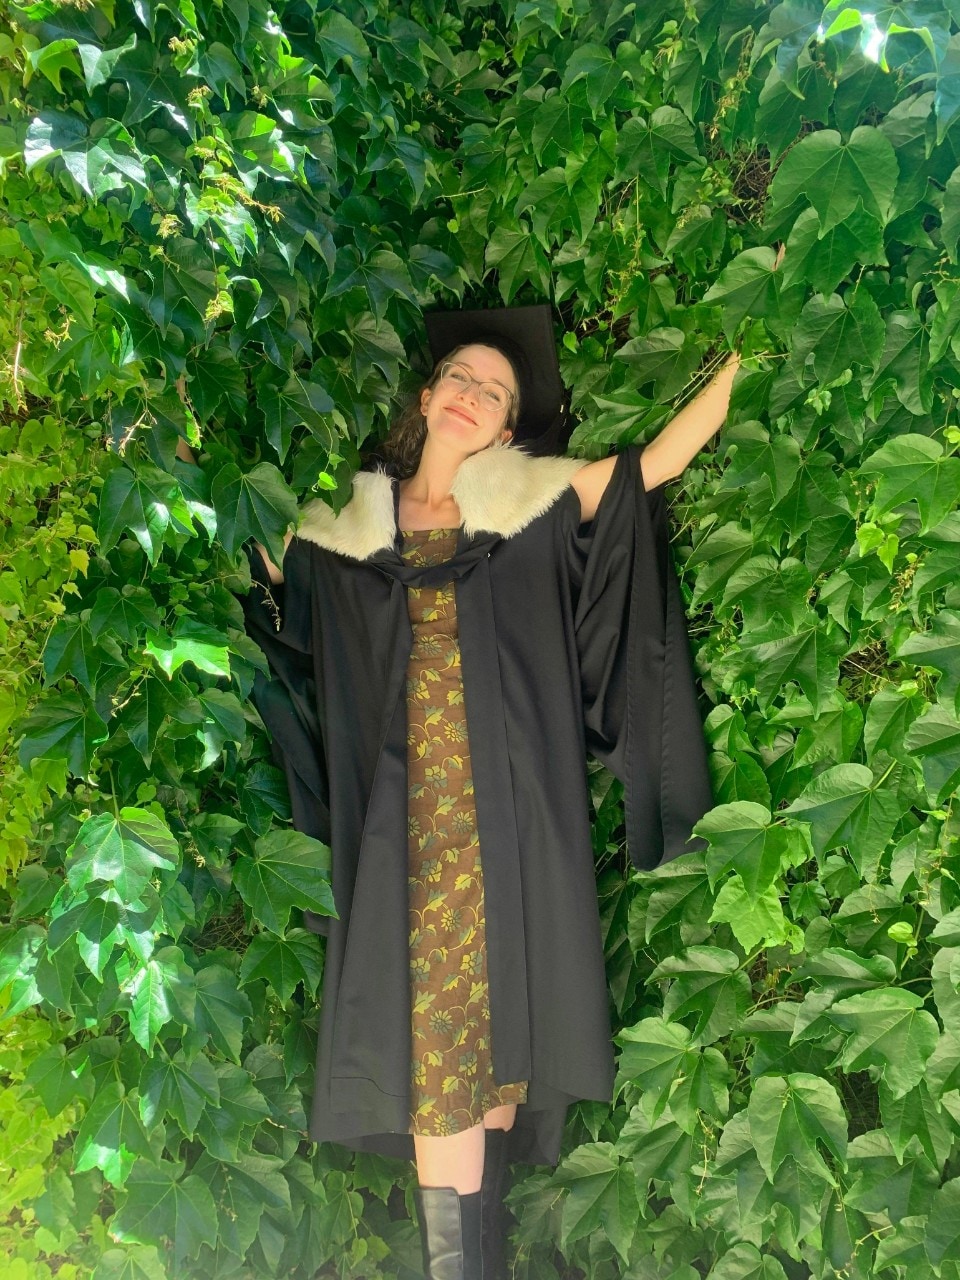 Bridey Lea wearing graduation gown